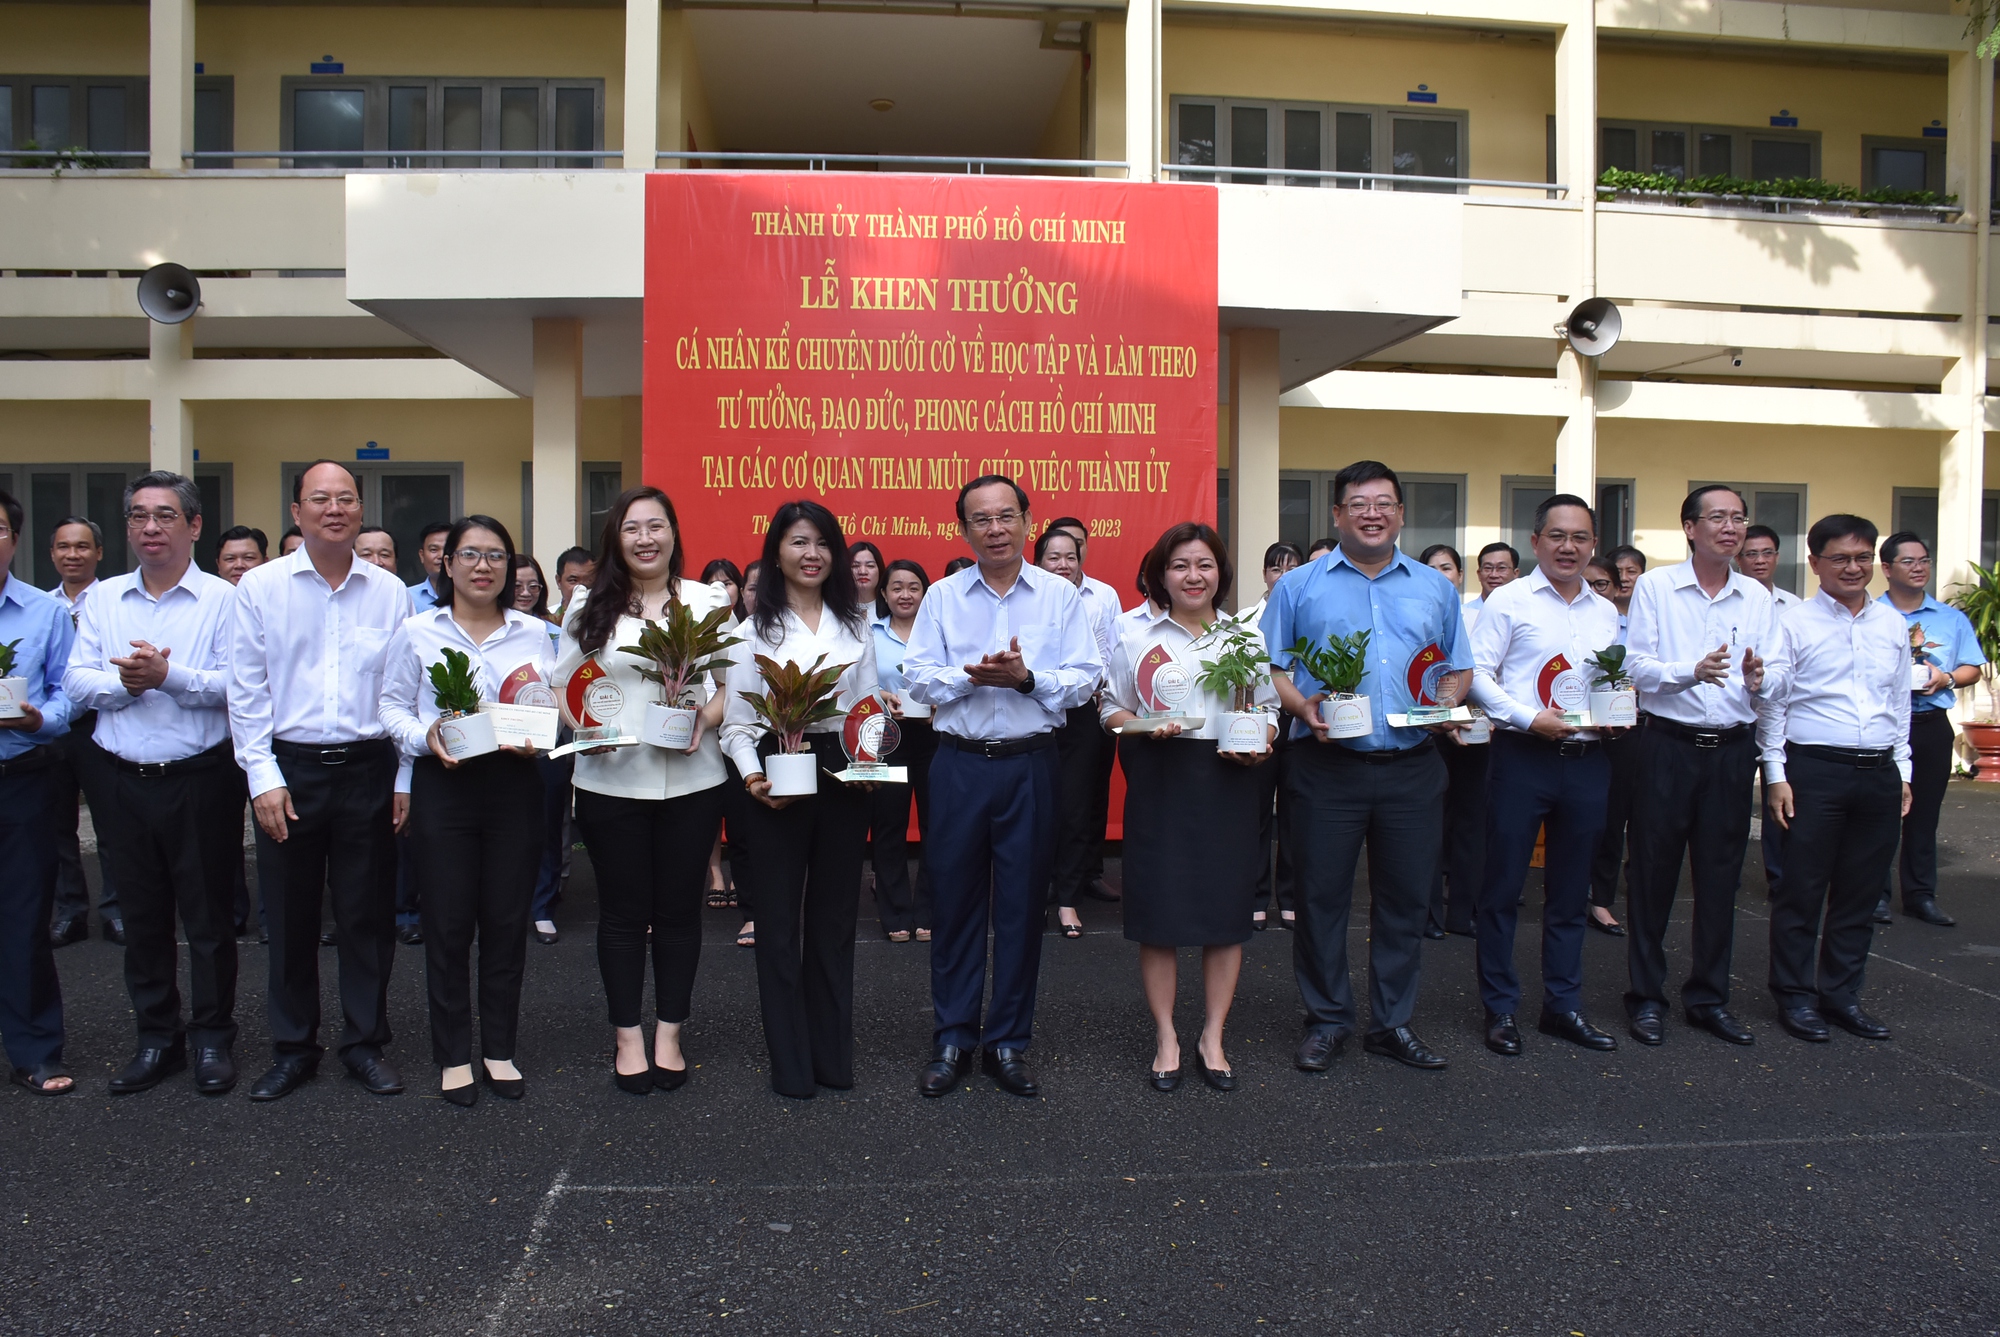 7 cá nhân của Thành ủy TP HCM đoạt giải hội thi kể chuyện dưới cờ về học Bác